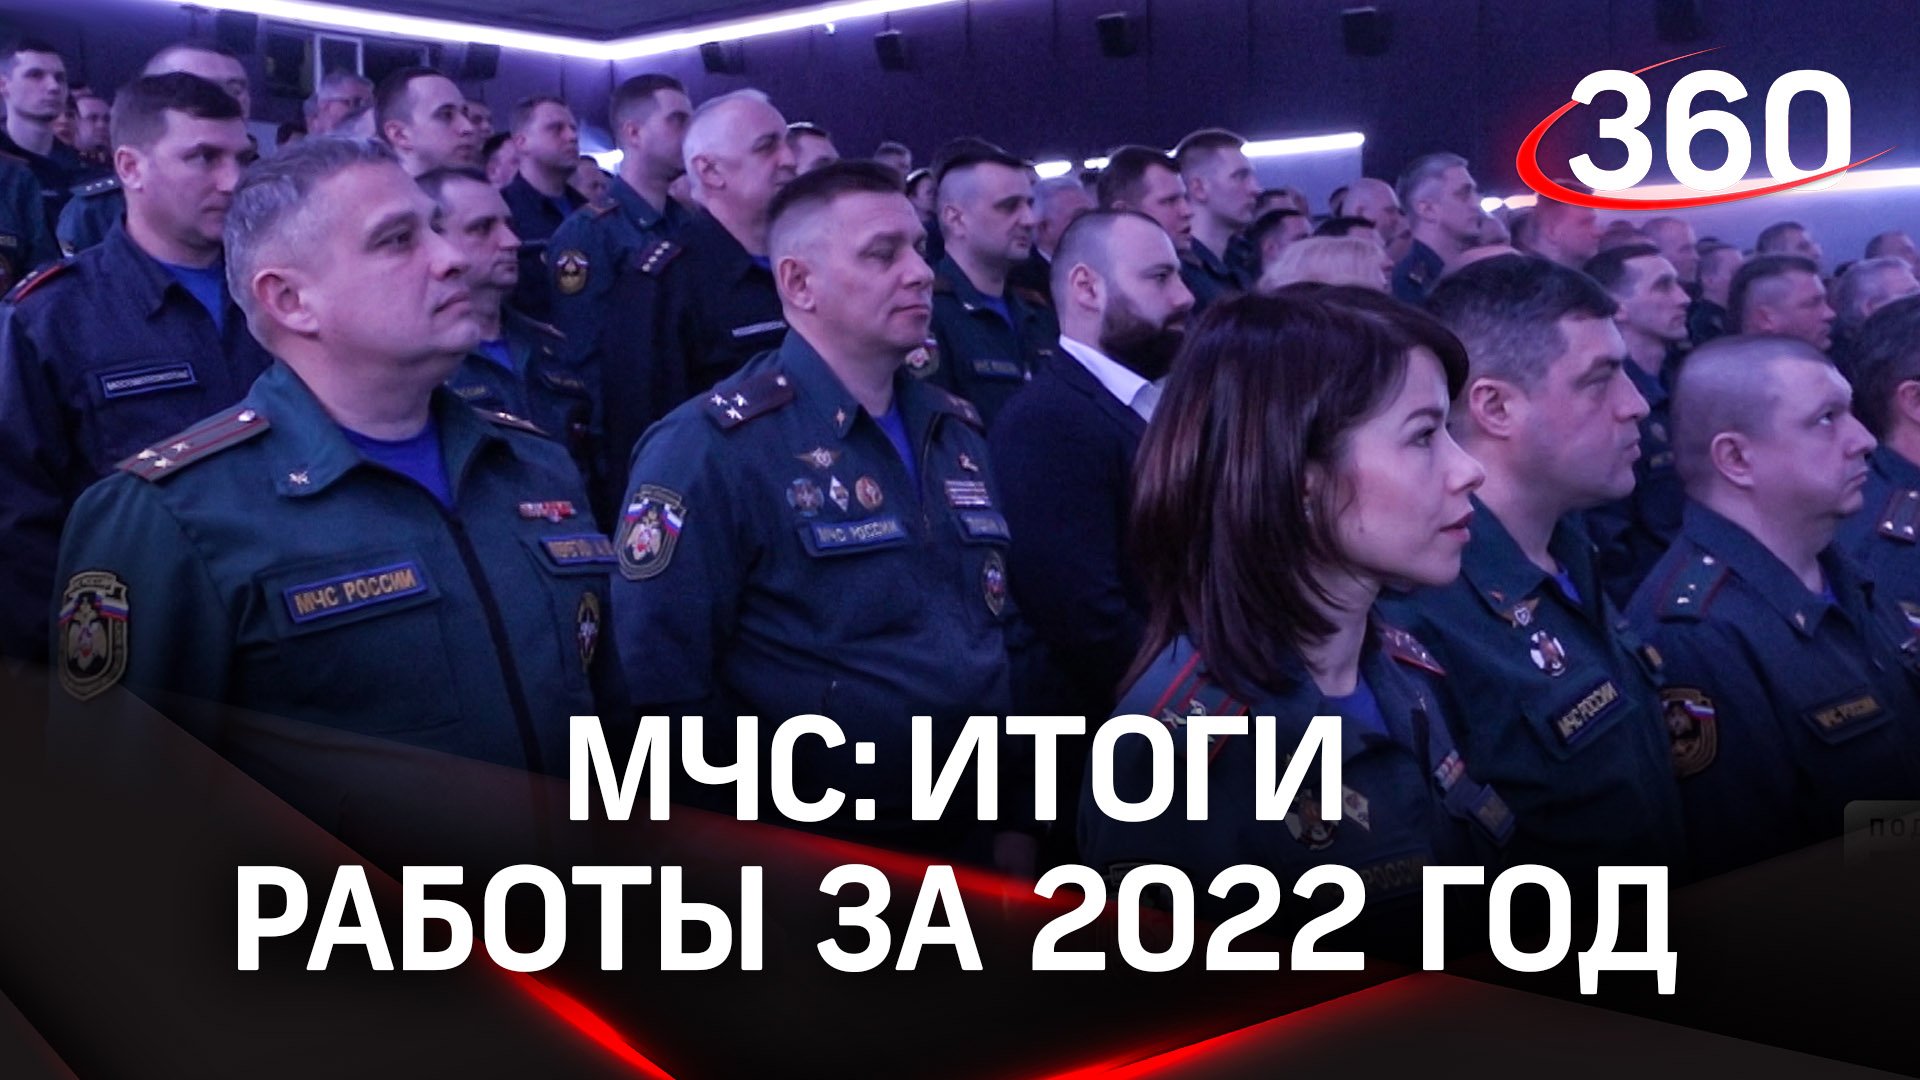 «Сложный и неординарный»: спасатели Подмосковья подвели итоги работы за 2022 год